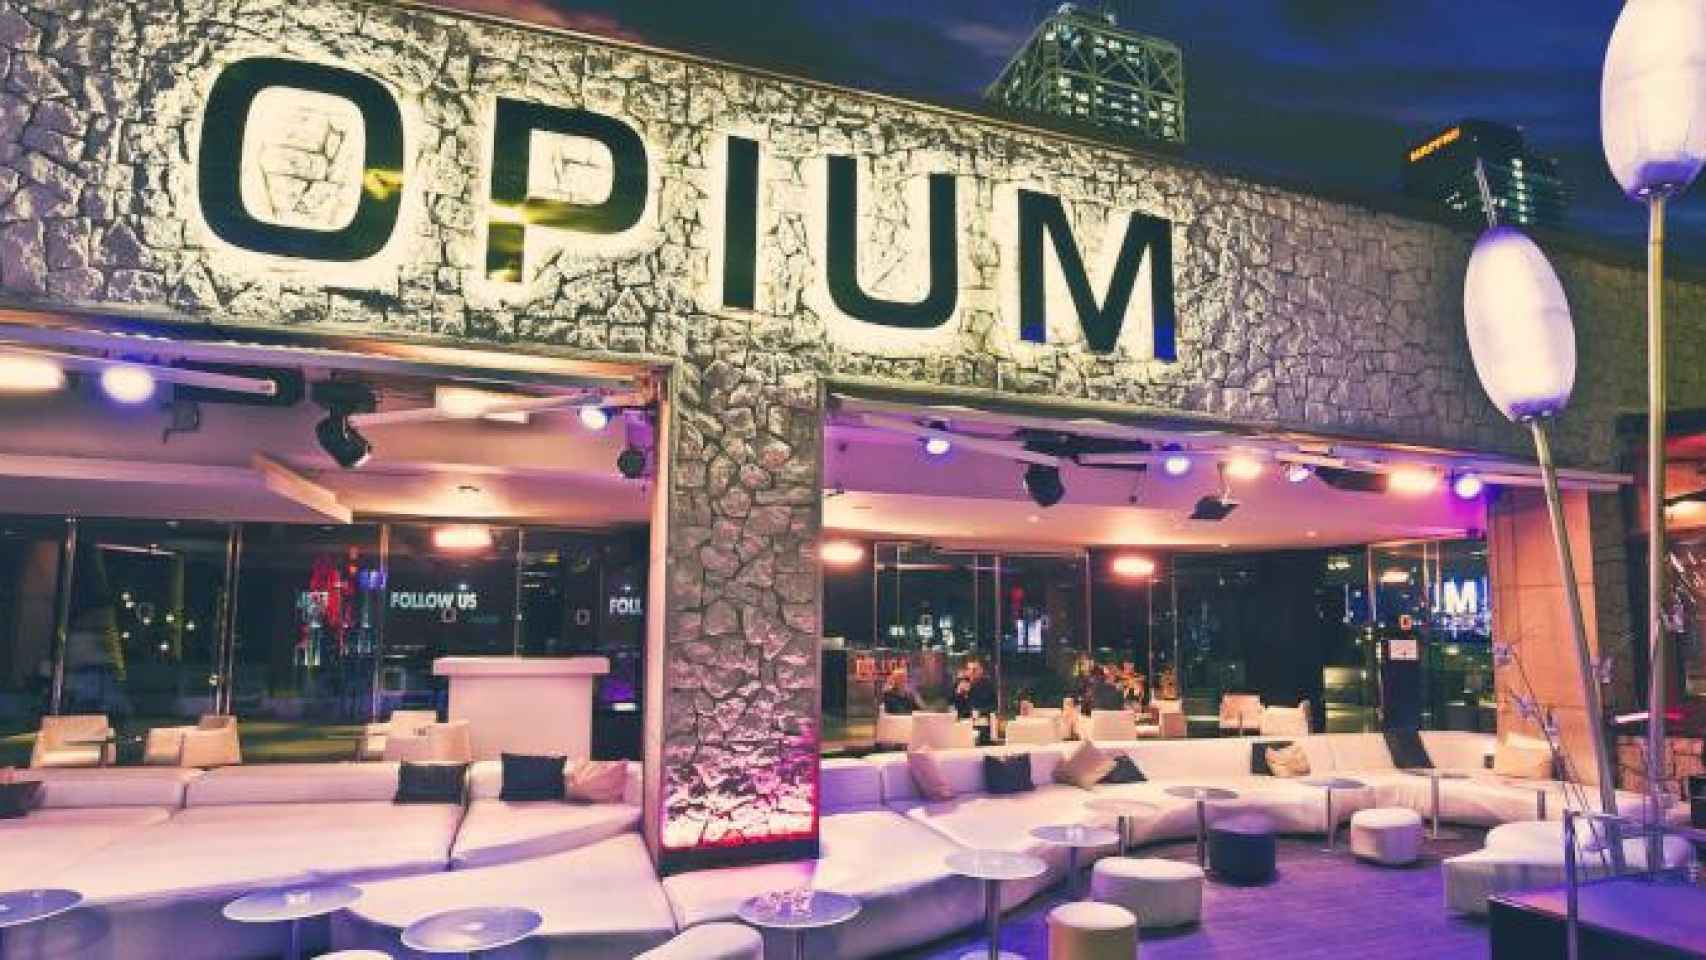 Imagen de Opium Barcelona, una de las discotecas que quería cerrar Ada Colau en Barcelona / CG